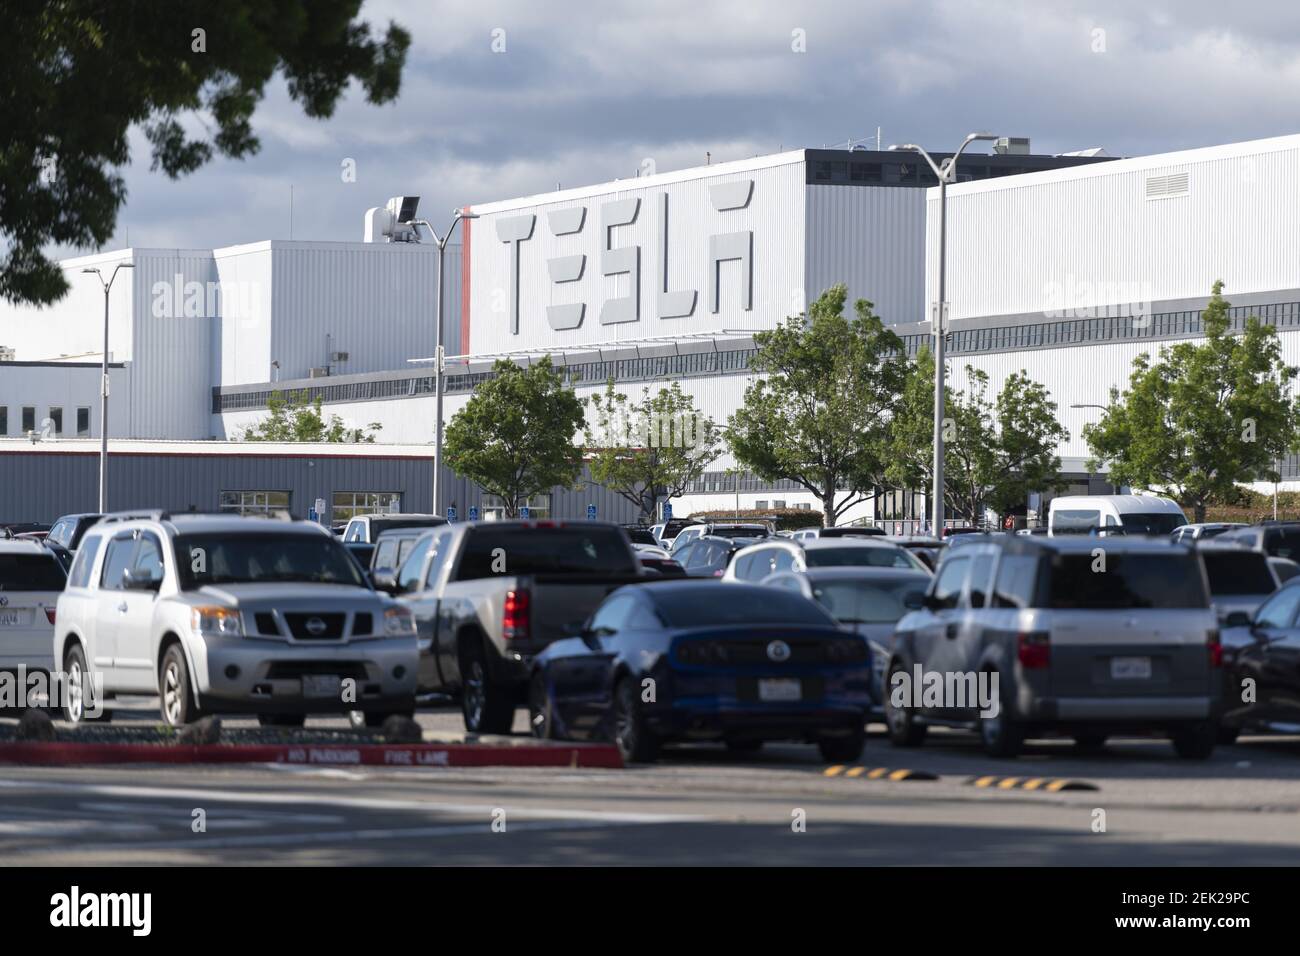 El estacionamiento de los empleados de Tesla se ve lleno de coches en la fábrica de Tesla en Fremont, California, Estados Unidos el 12 de mayo de 2020. El Condado de Alameda ha ordenado a Tesla que detenga la producción después de que el CEO Elon Musk abra desafiante la planta de fabricación de vehículos eléctricos contra una ordenanza del condado. Elon Musk insiste en que su empresa es un negocio esencial durante el cierre del coronavirus (COVID-19). (Foto de Yichuan Cao/Sipa USA) Foto de stock